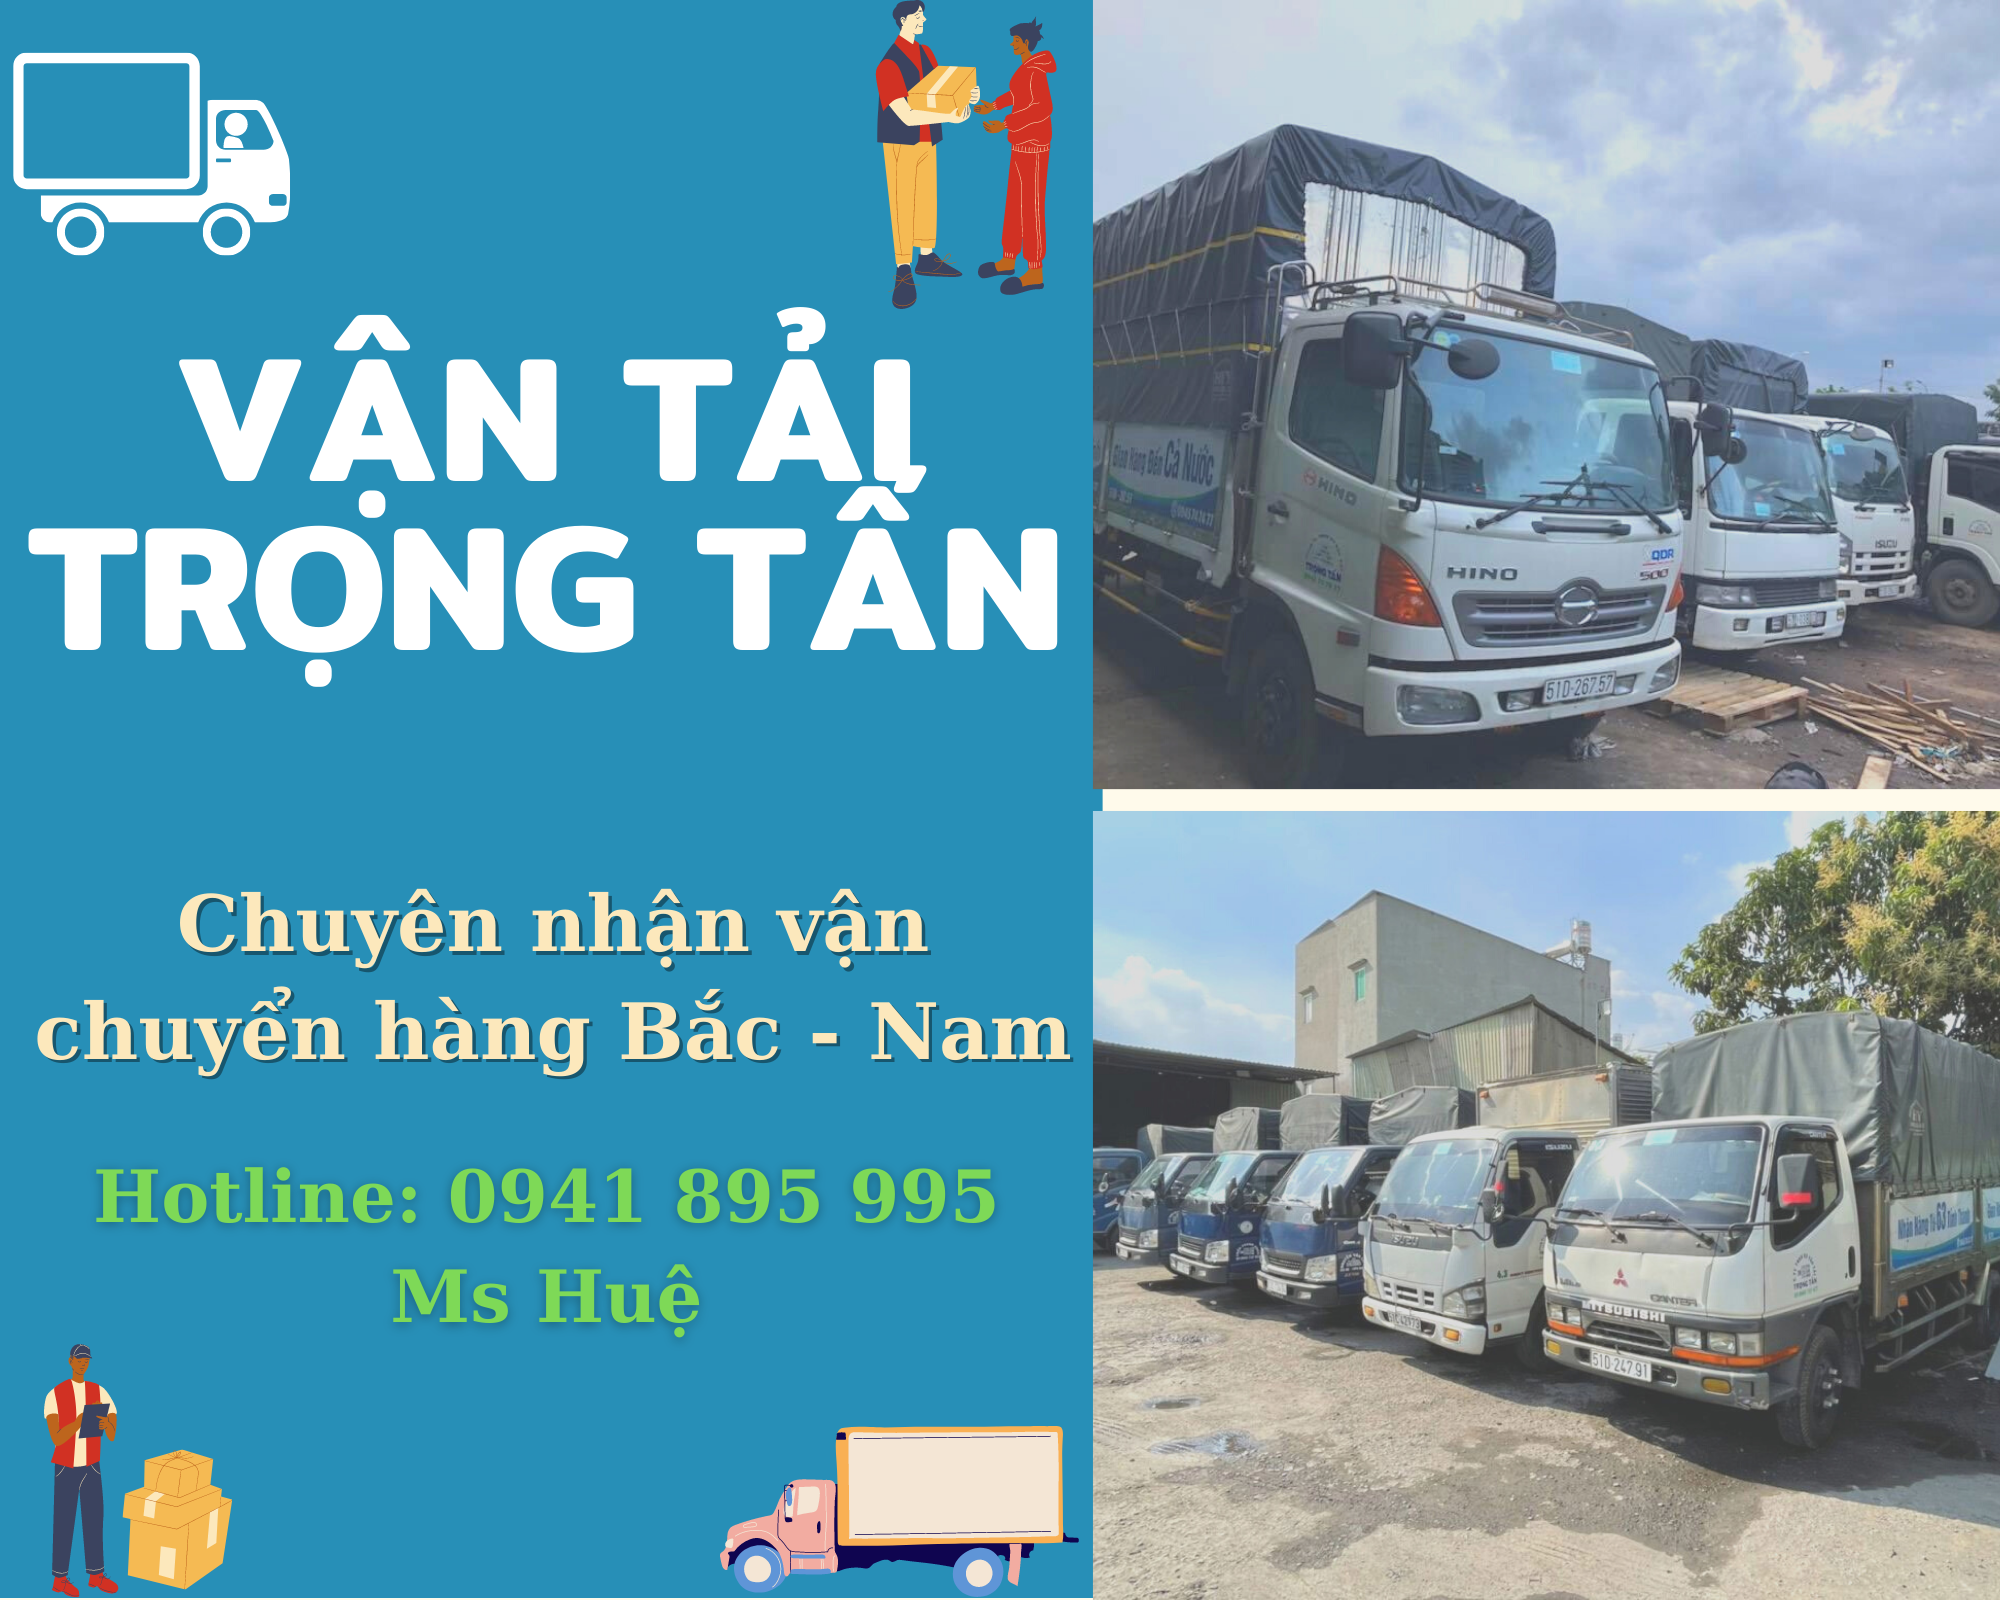 Xe chuyển hàng Hà Nội - Phan Rang